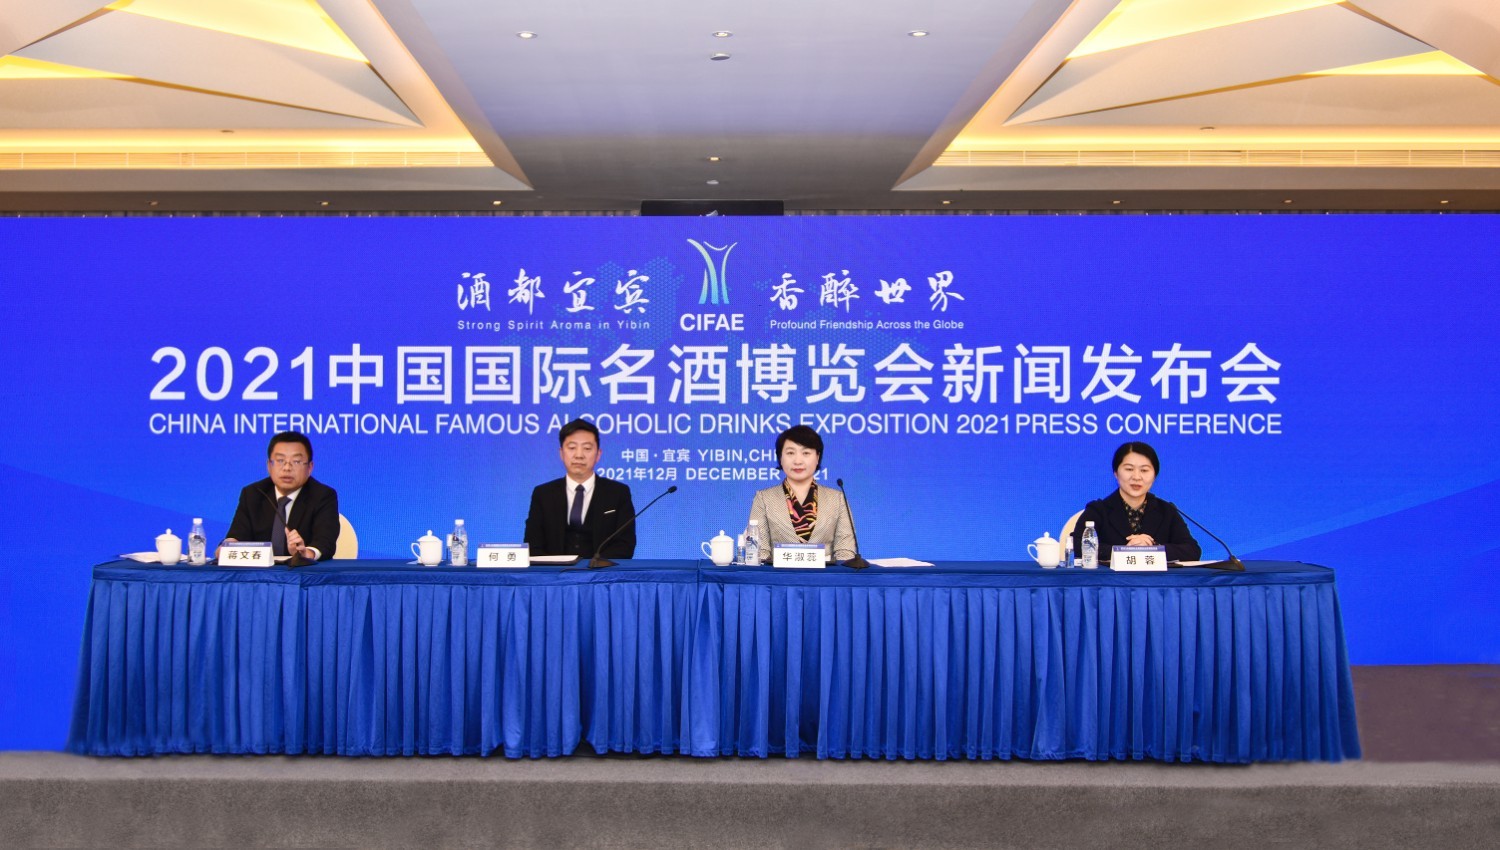 2021中国国际名酒展览会将于12月17日在四川宜宾开幕